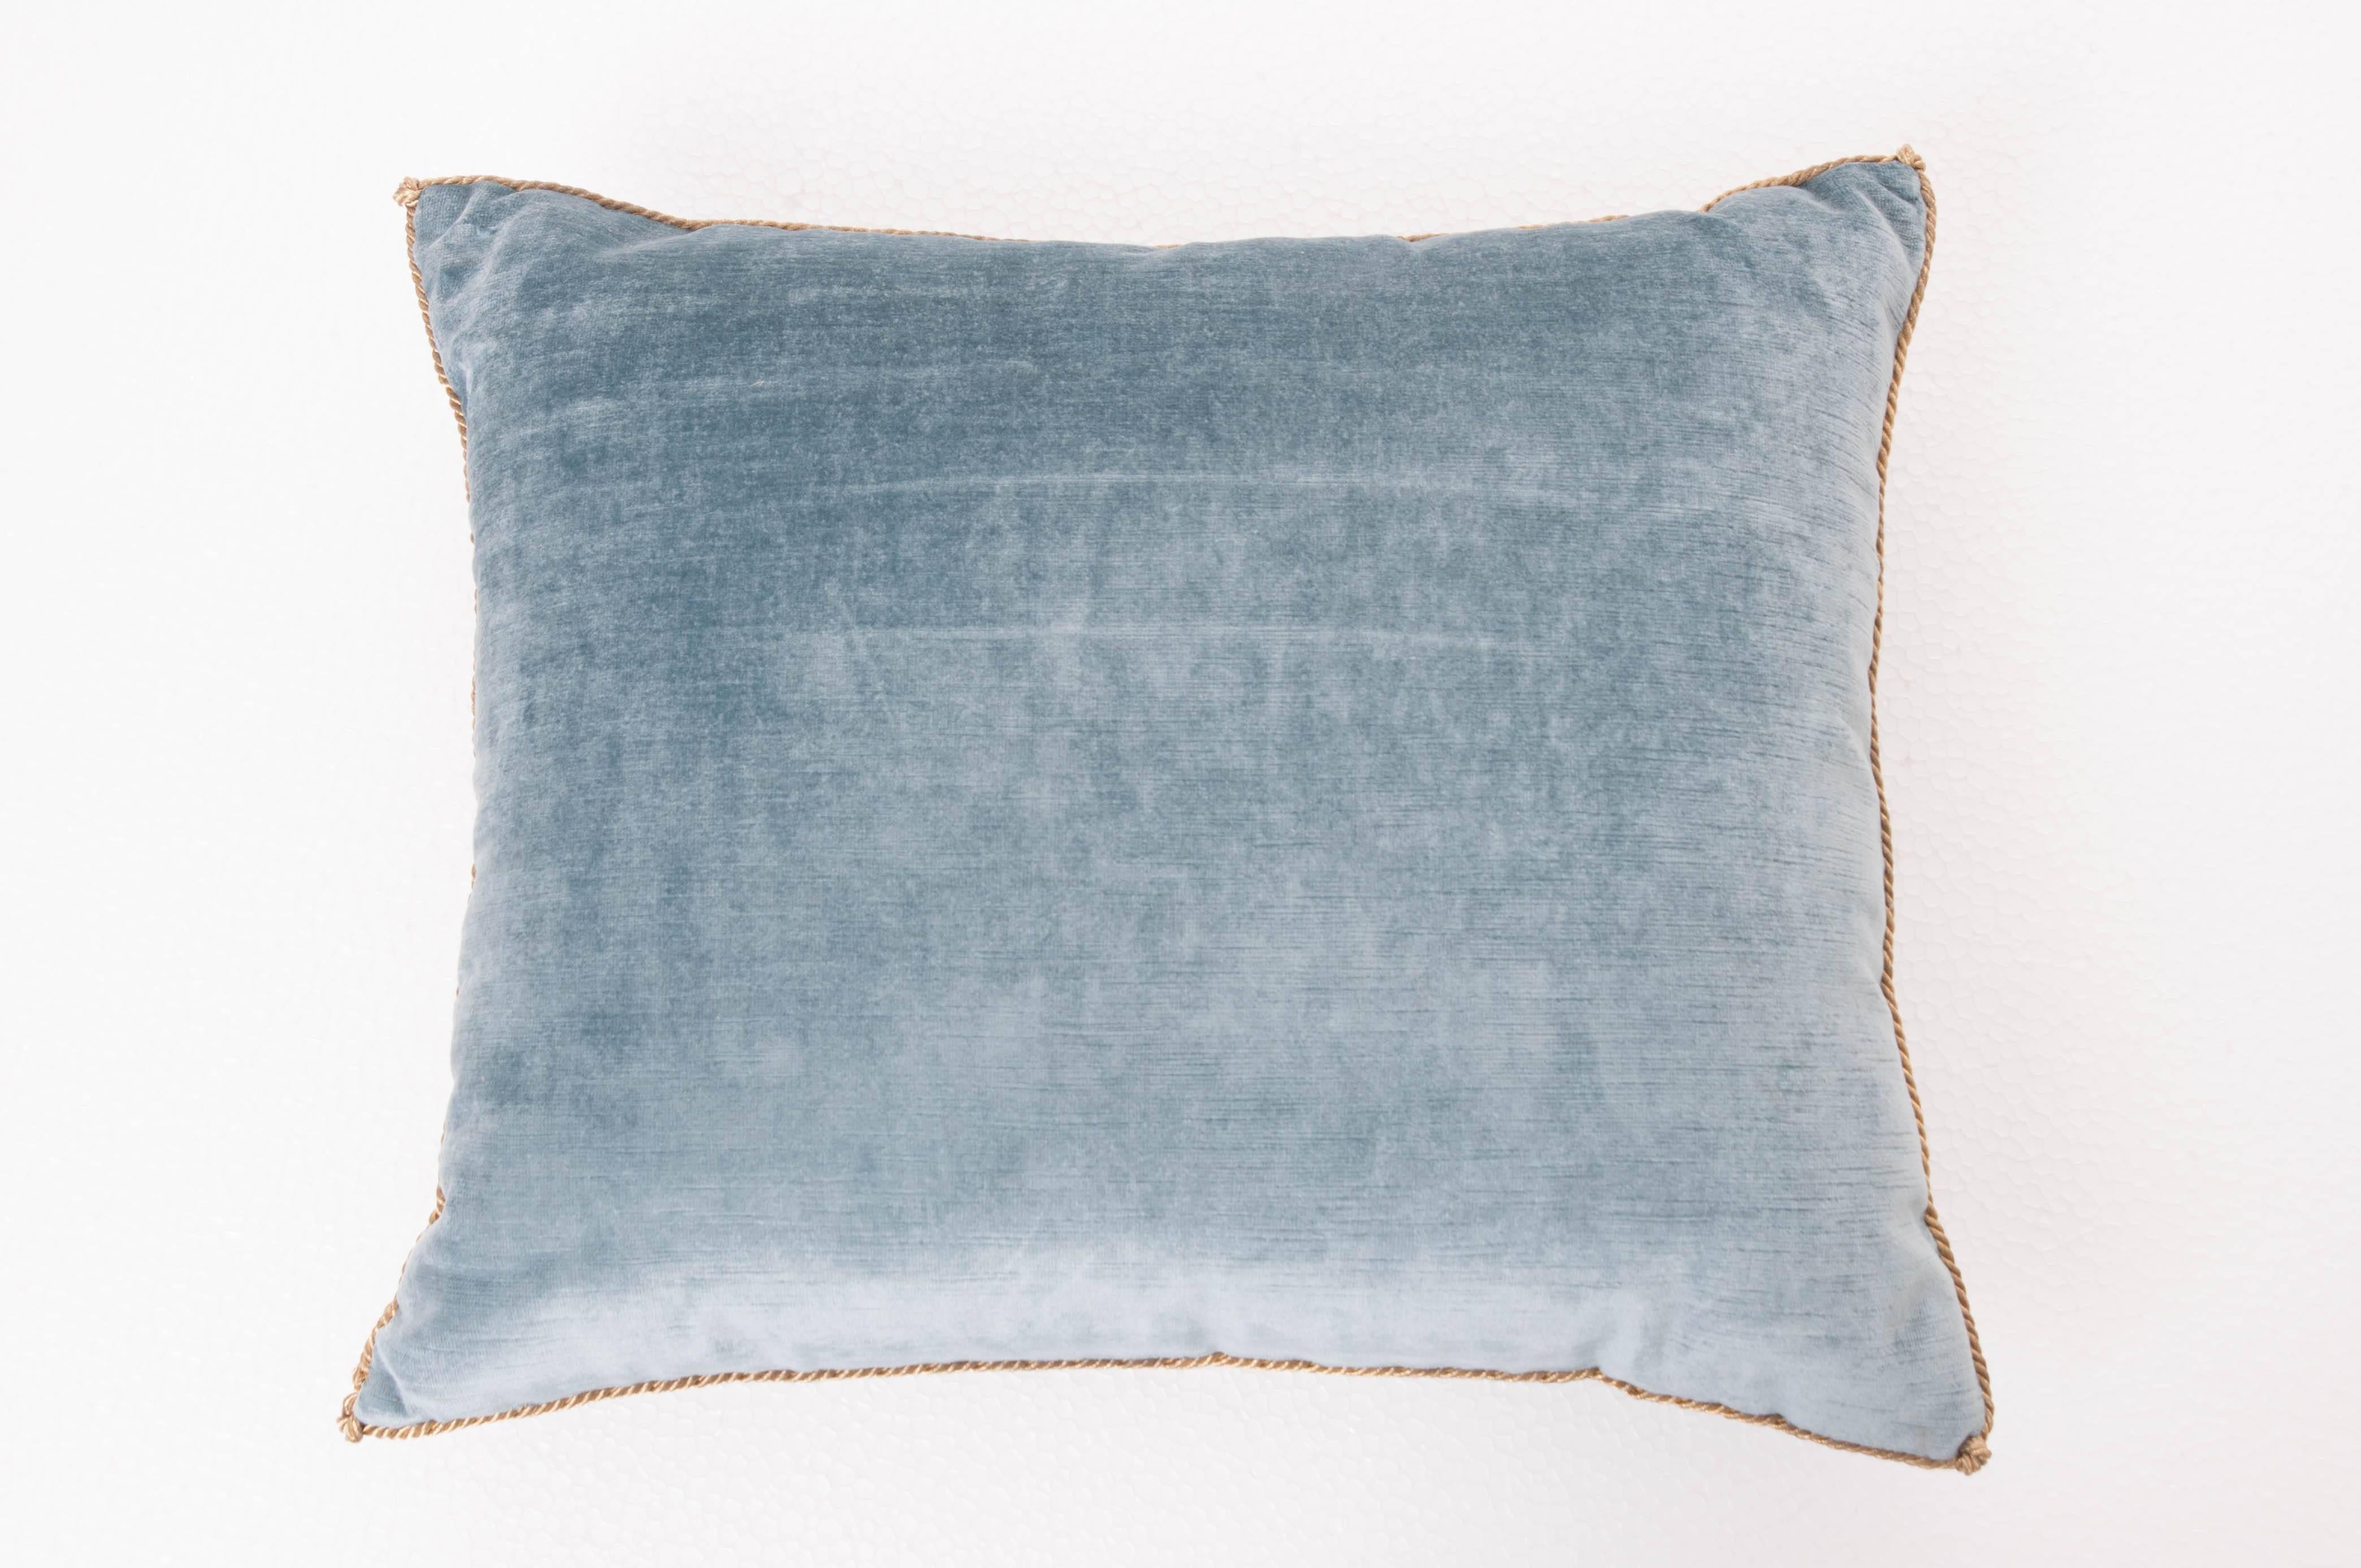 Antique Textile Pillow by B. Viz Designs 4